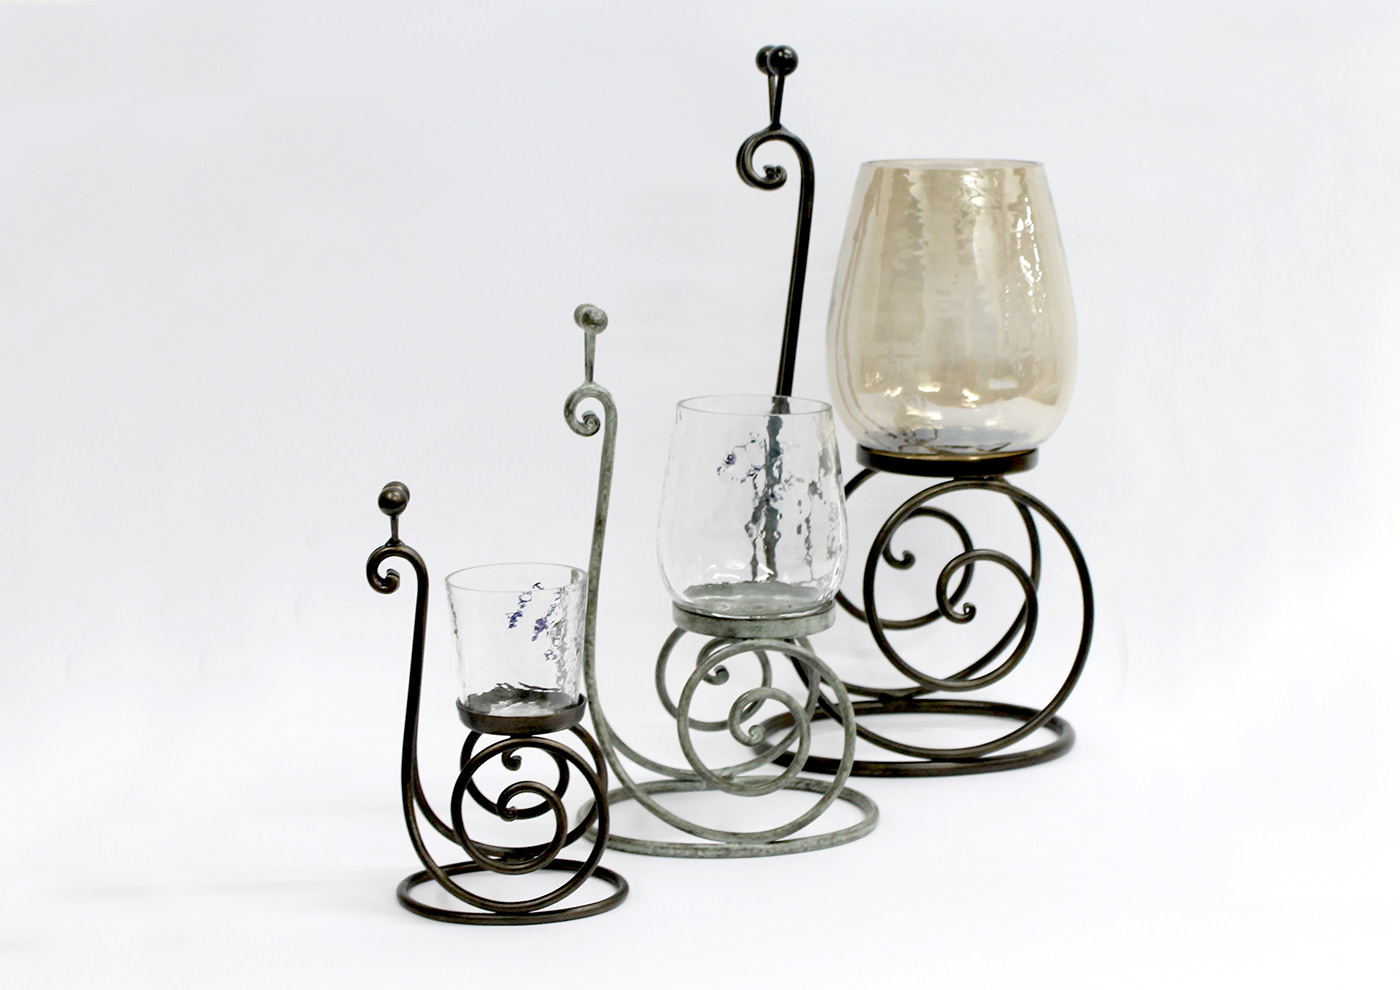 product design  candle holder furniture design  home decor industrial design 